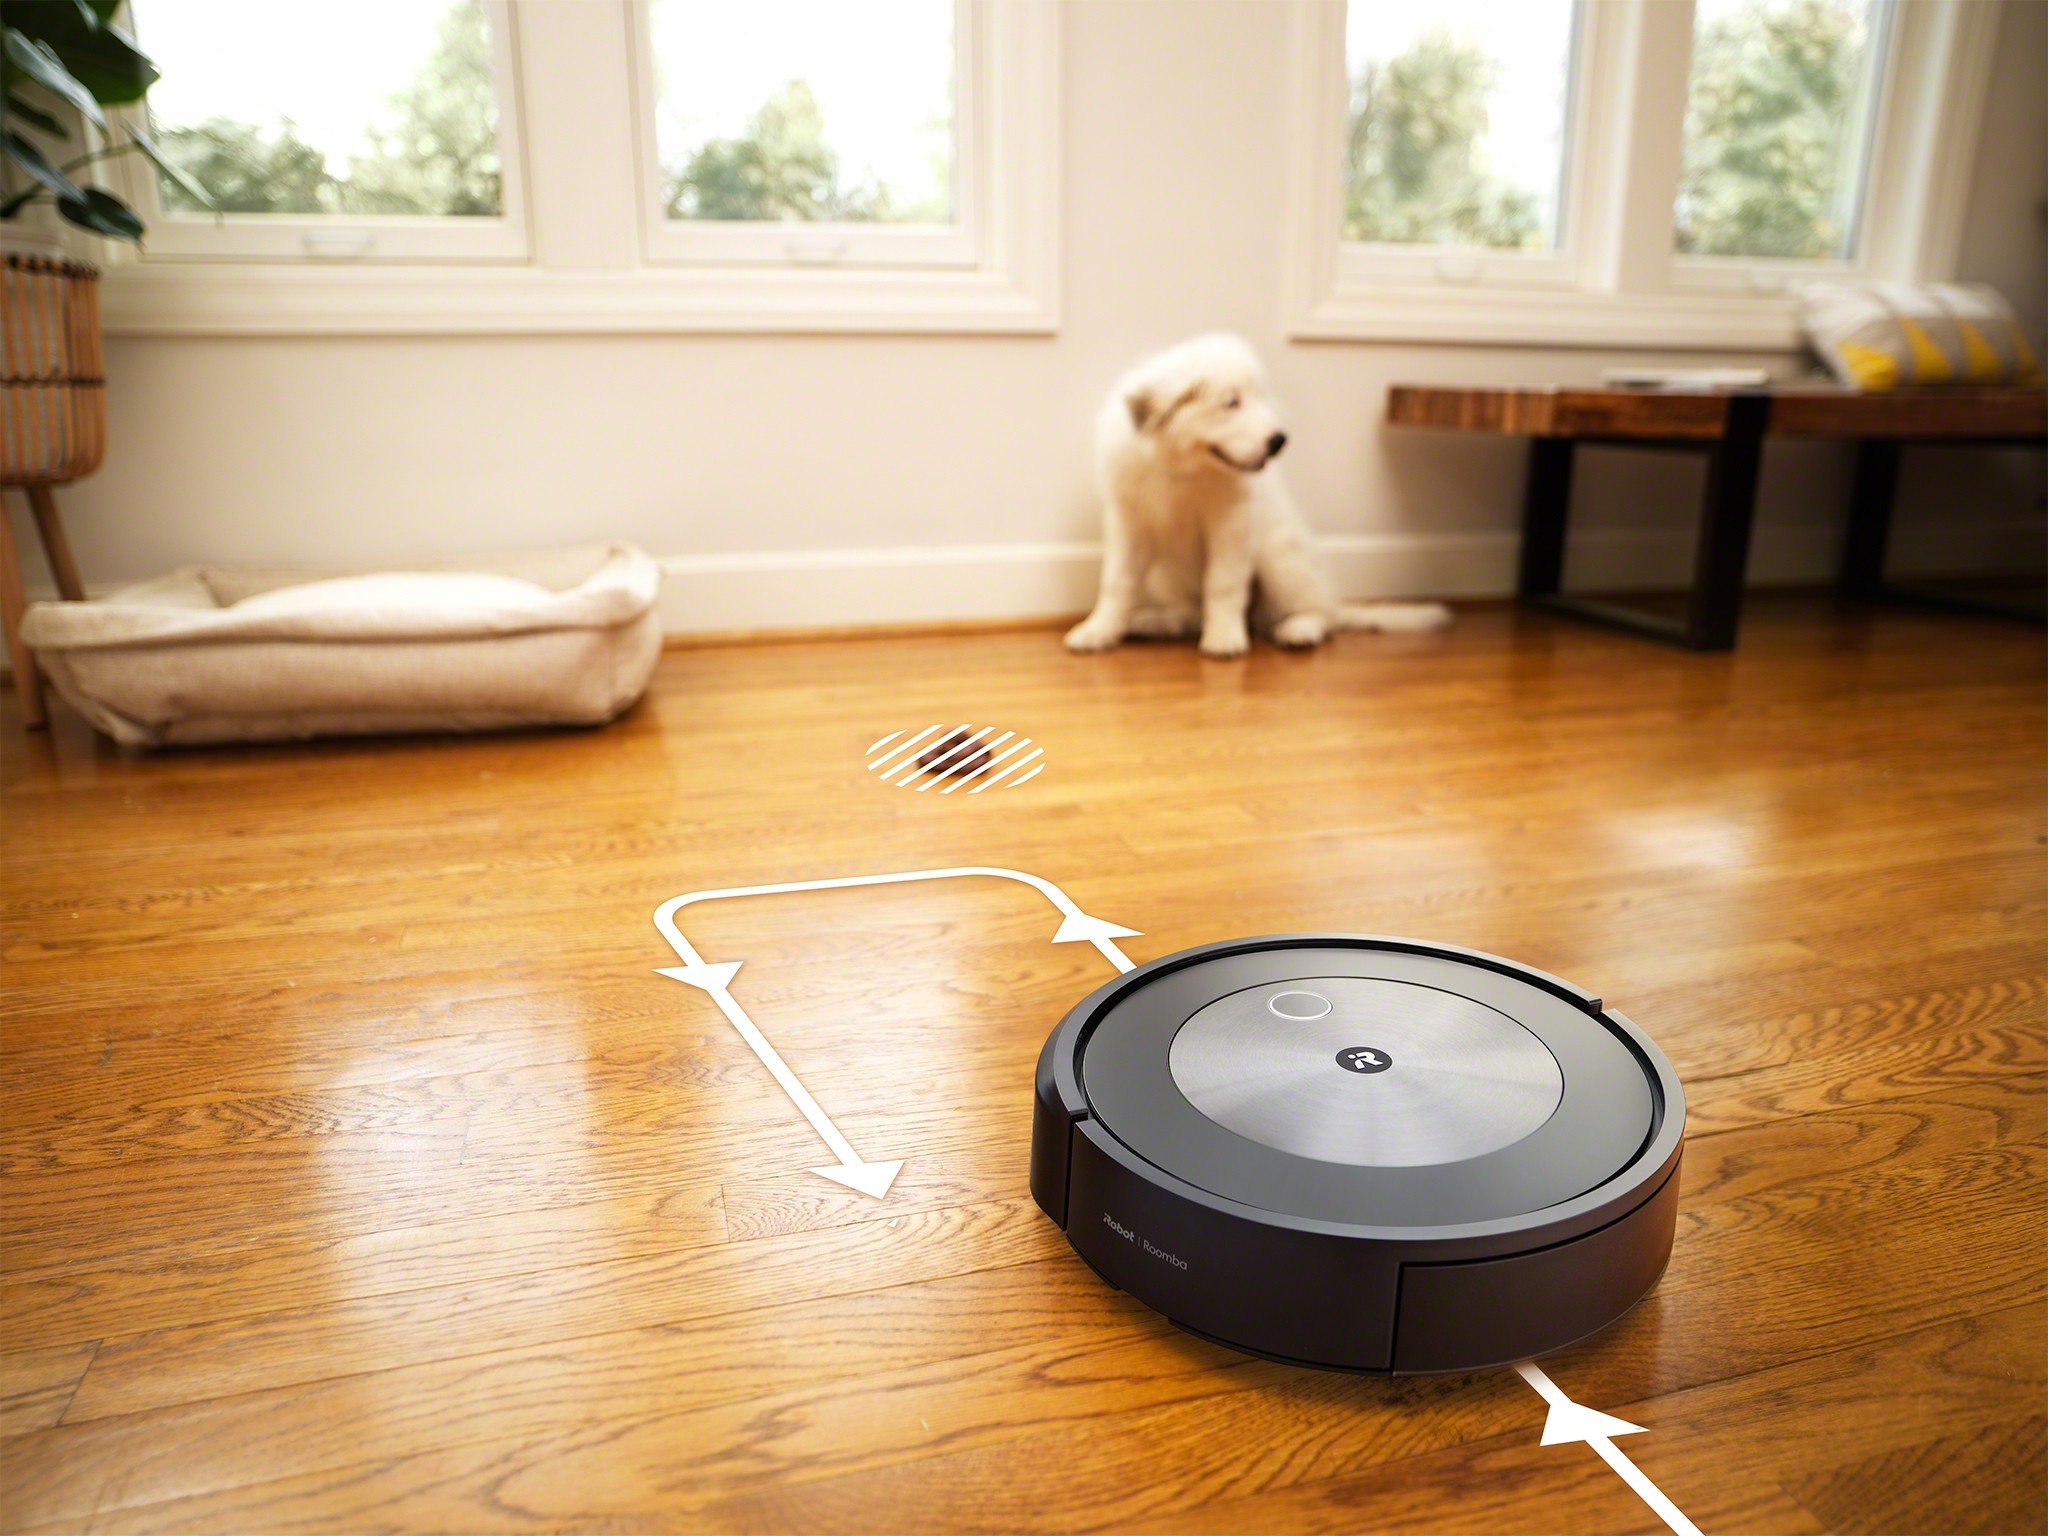 
Máy hút bụi tự động Roomba
